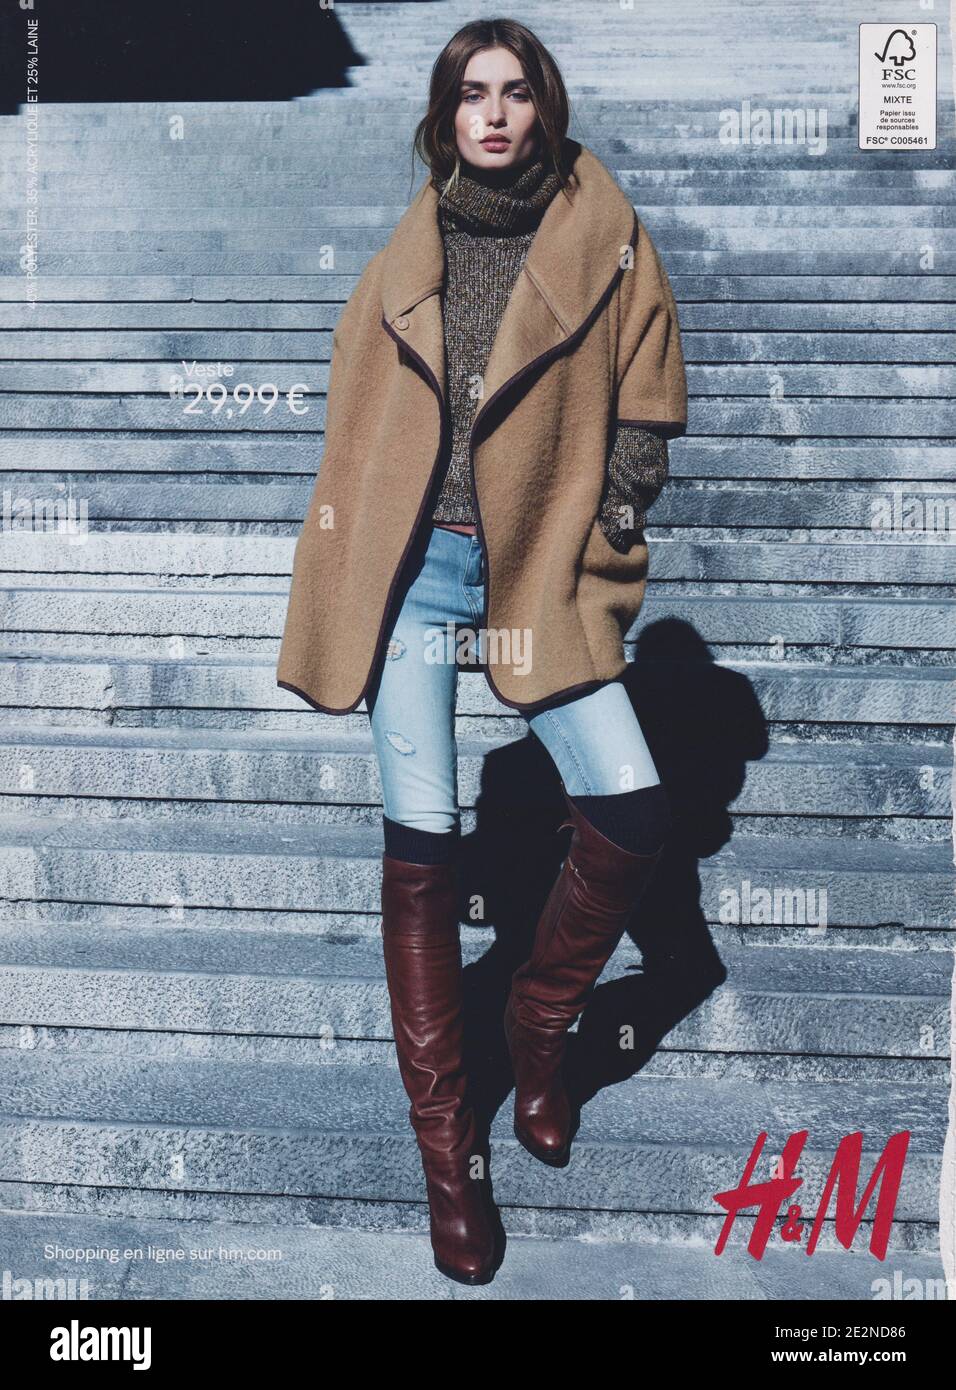 Cartel de publicidad H&M casa de la moda con Andreea Diaconu en la revista  de papel de 2014, publicidad, anuncio creativo Hennes & Mauritz 2010  Fotografía de stock - Alamy